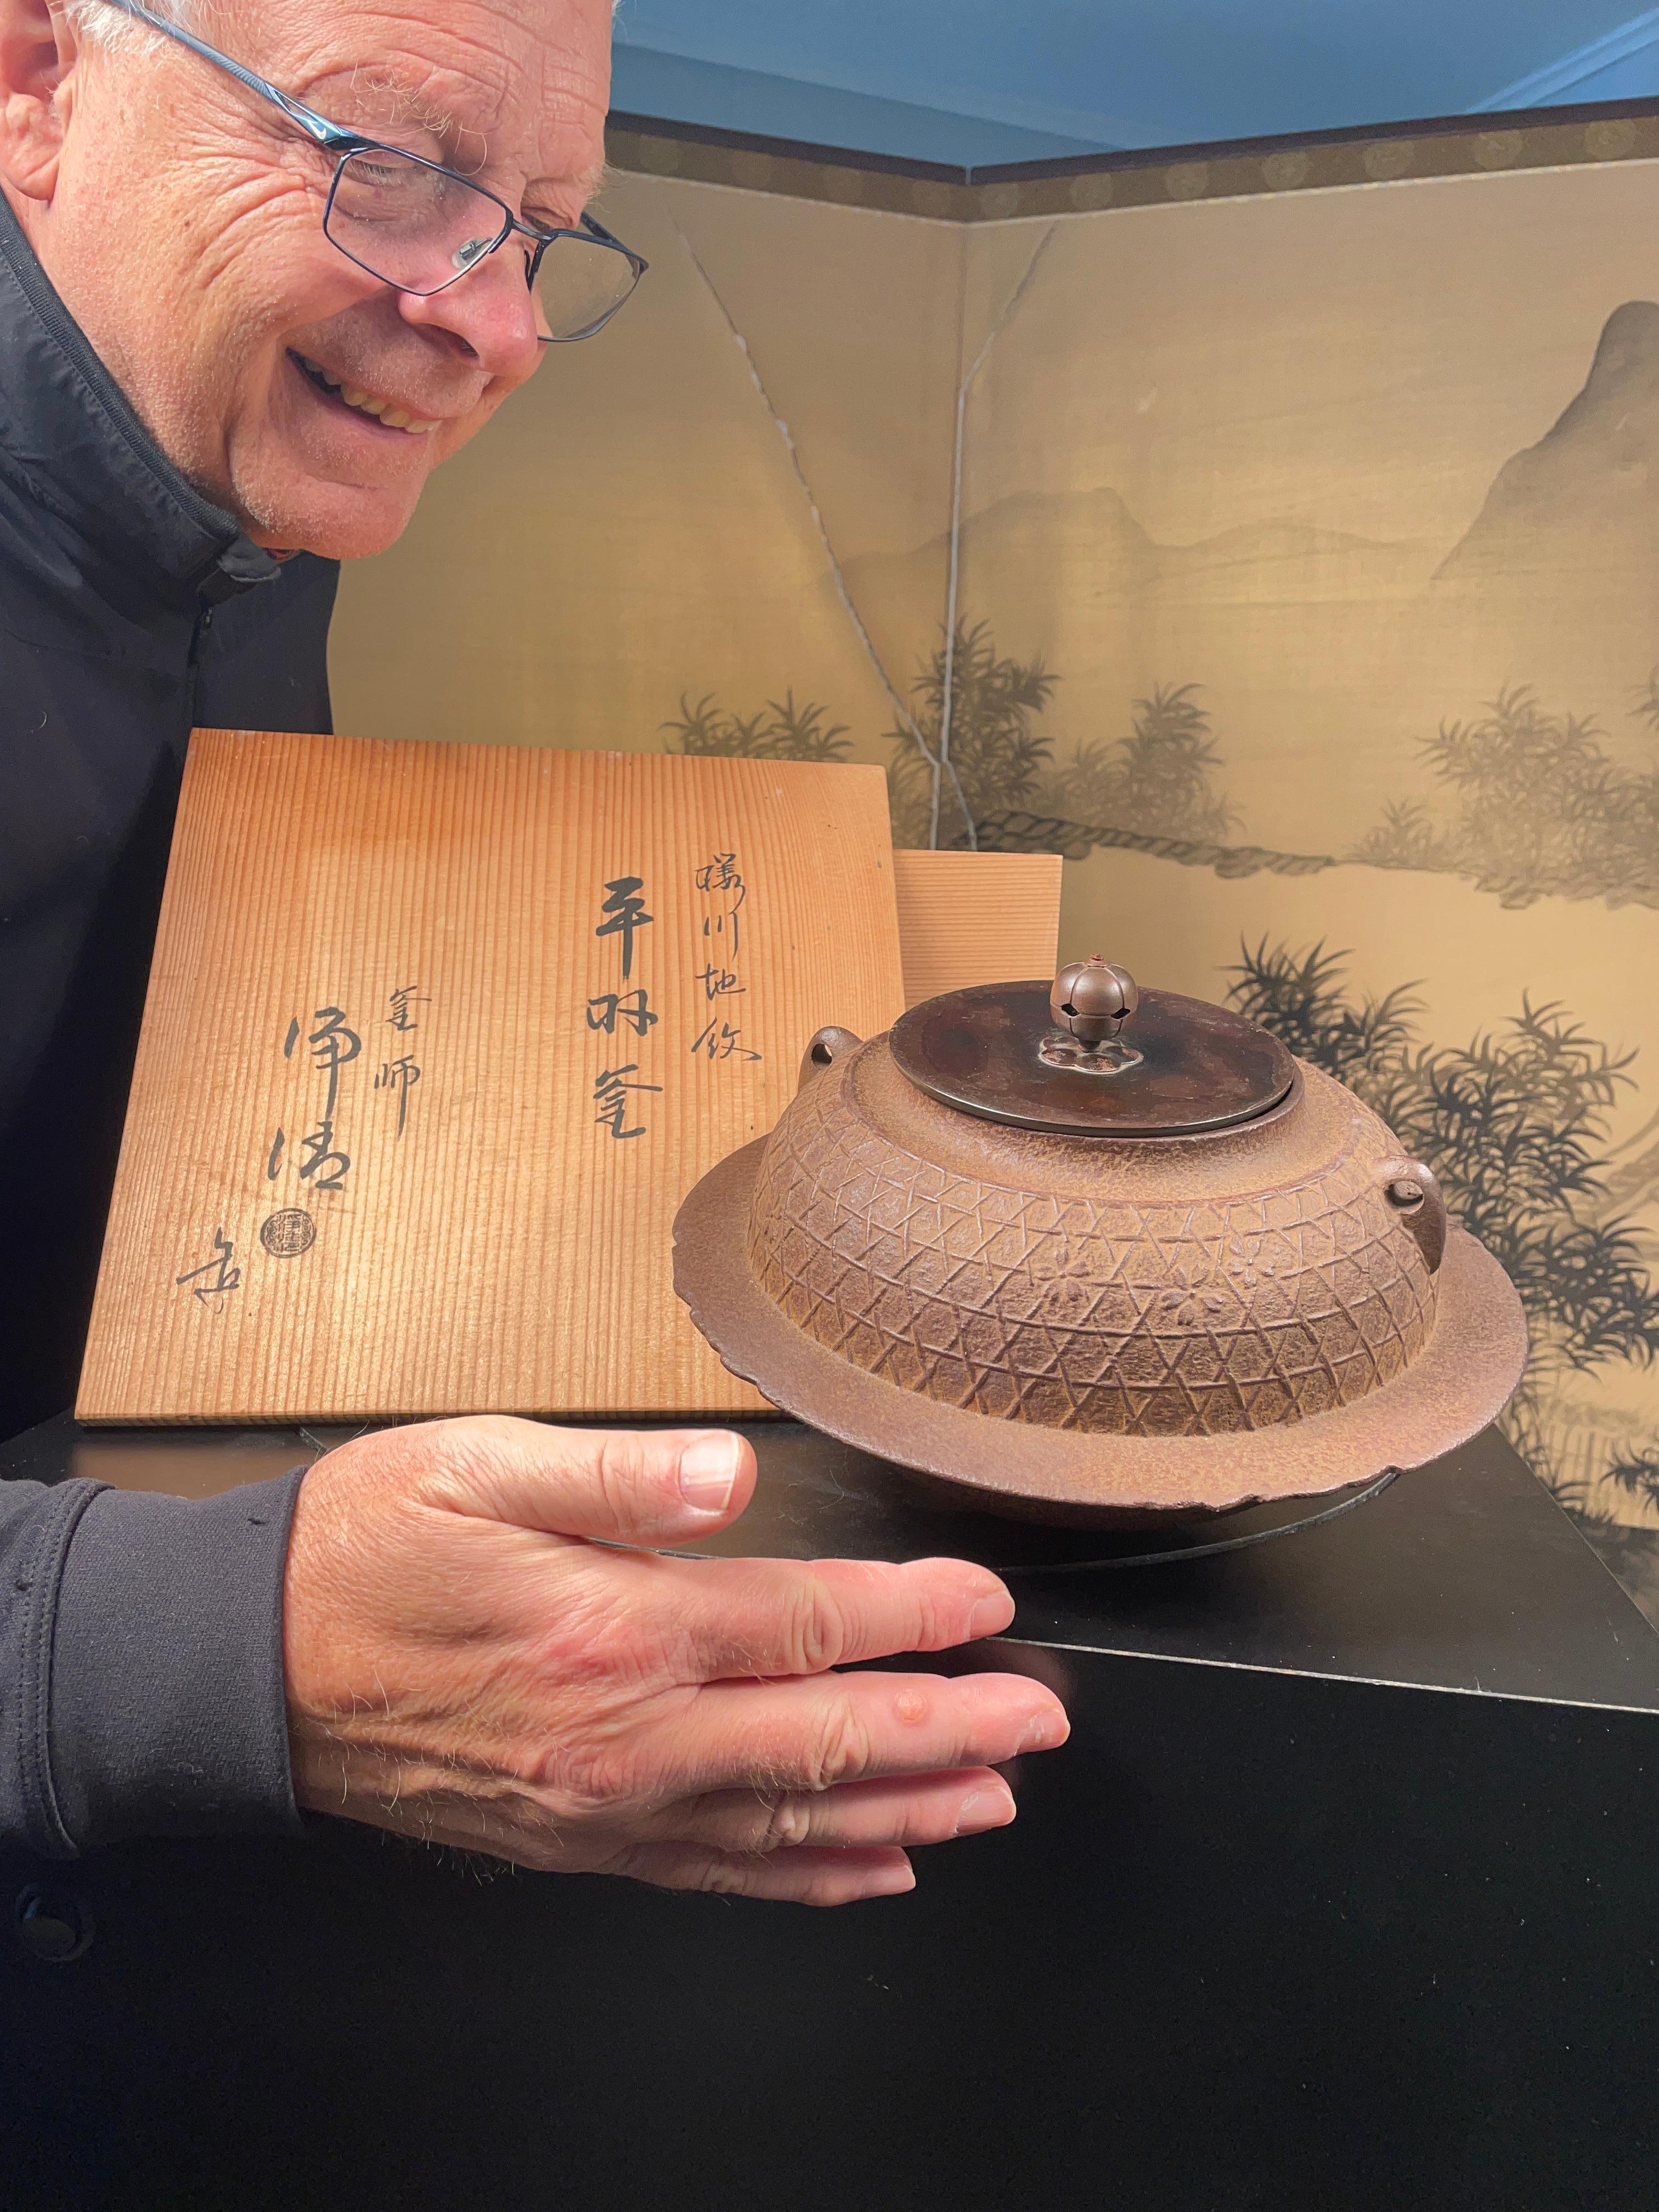 Unsere jüngsten japanischen Ankäufe mit signierter Originalverpackung.

Eine fein gegossene japanische traditionelle eiserne Teekanne -chagama - mit einem wunderbaren Reliefband und einem Design aus Sommerbambusimitat mit frühen Blumen rundherum